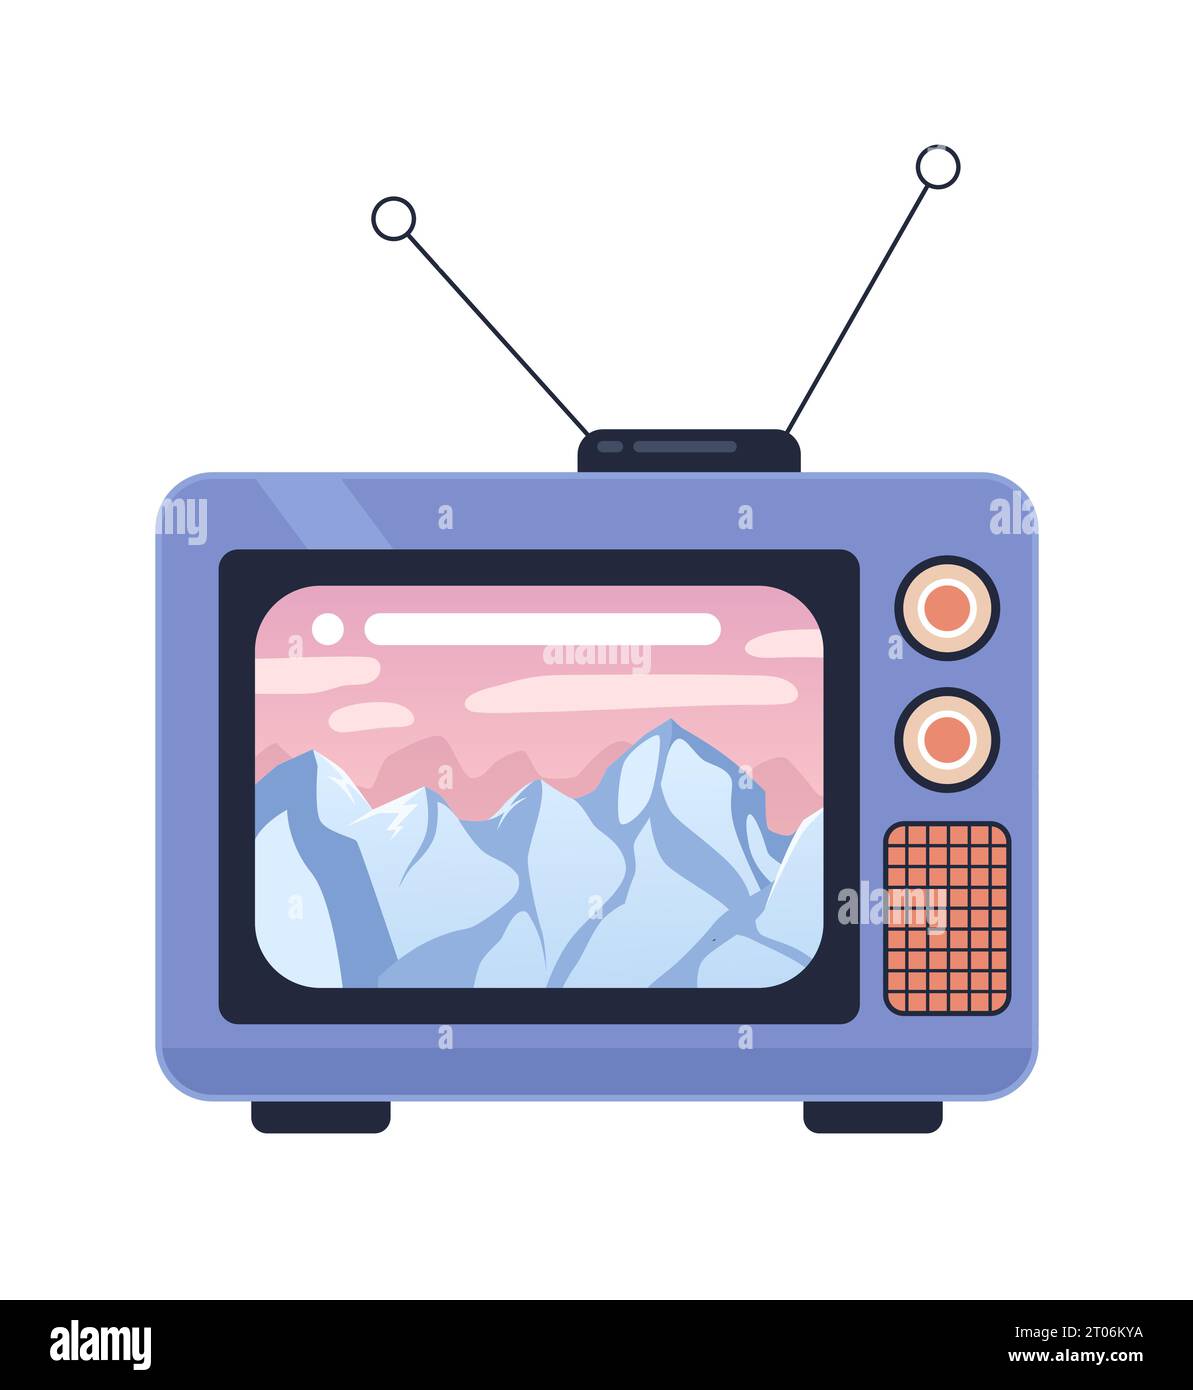 Montagnes rocheuses sur l'objet de dessin animé 2D tv des années 1980 Illustration de Vecteur